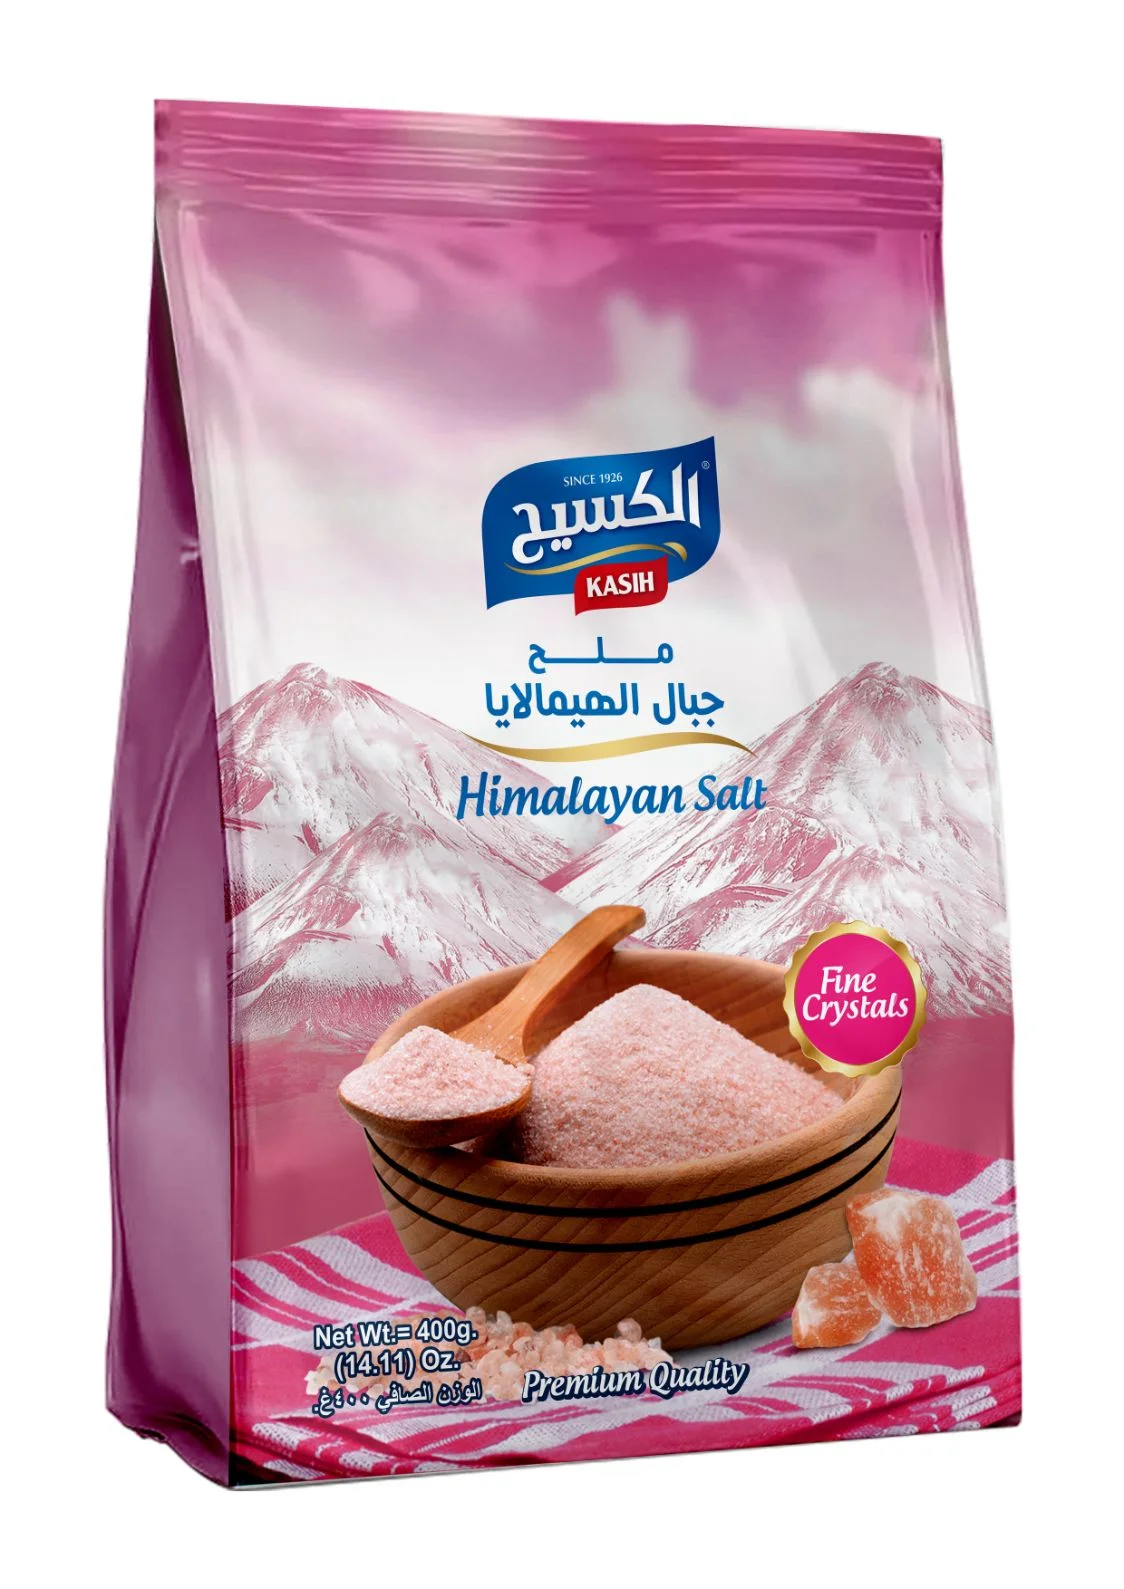 KASIH Himalayan Salt